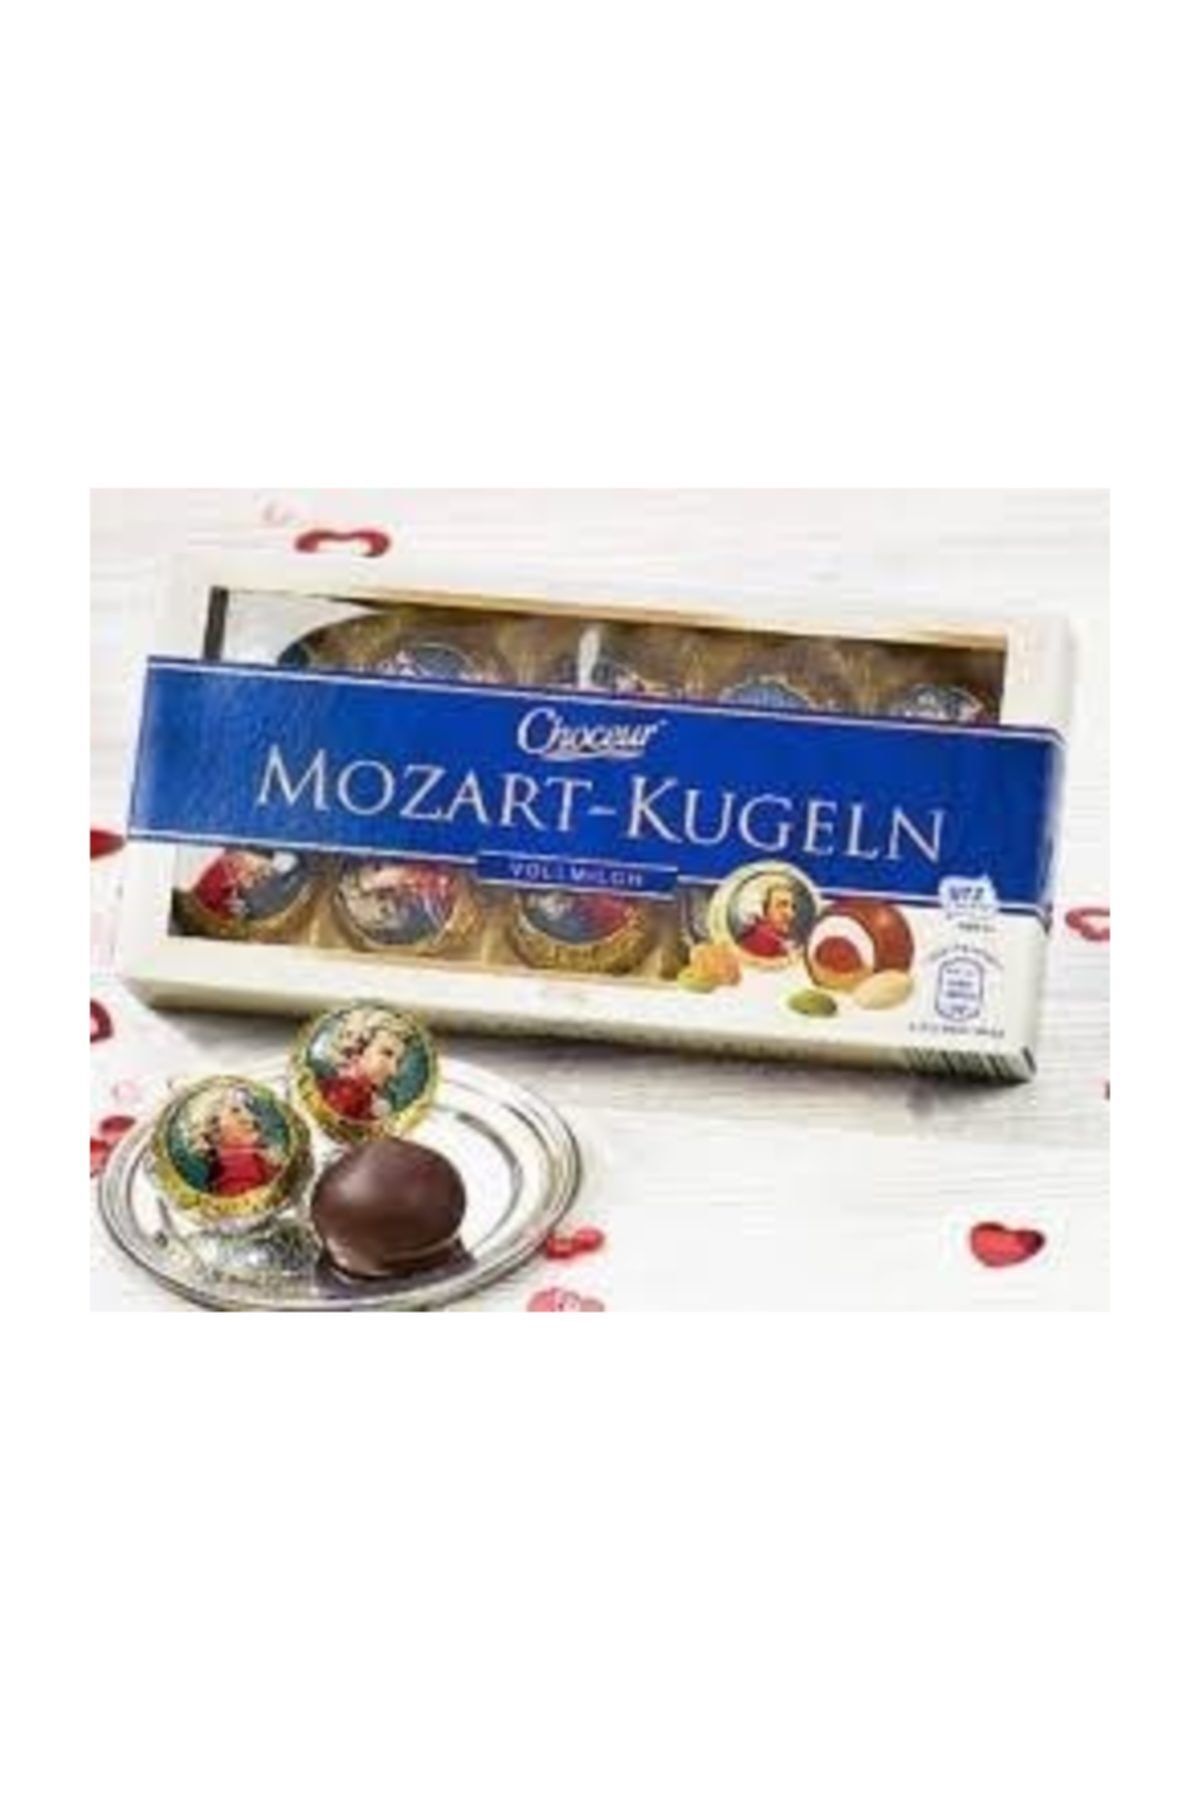 Choceur Mozart Kugeln 200gr Marzipan Bademli Çikolata